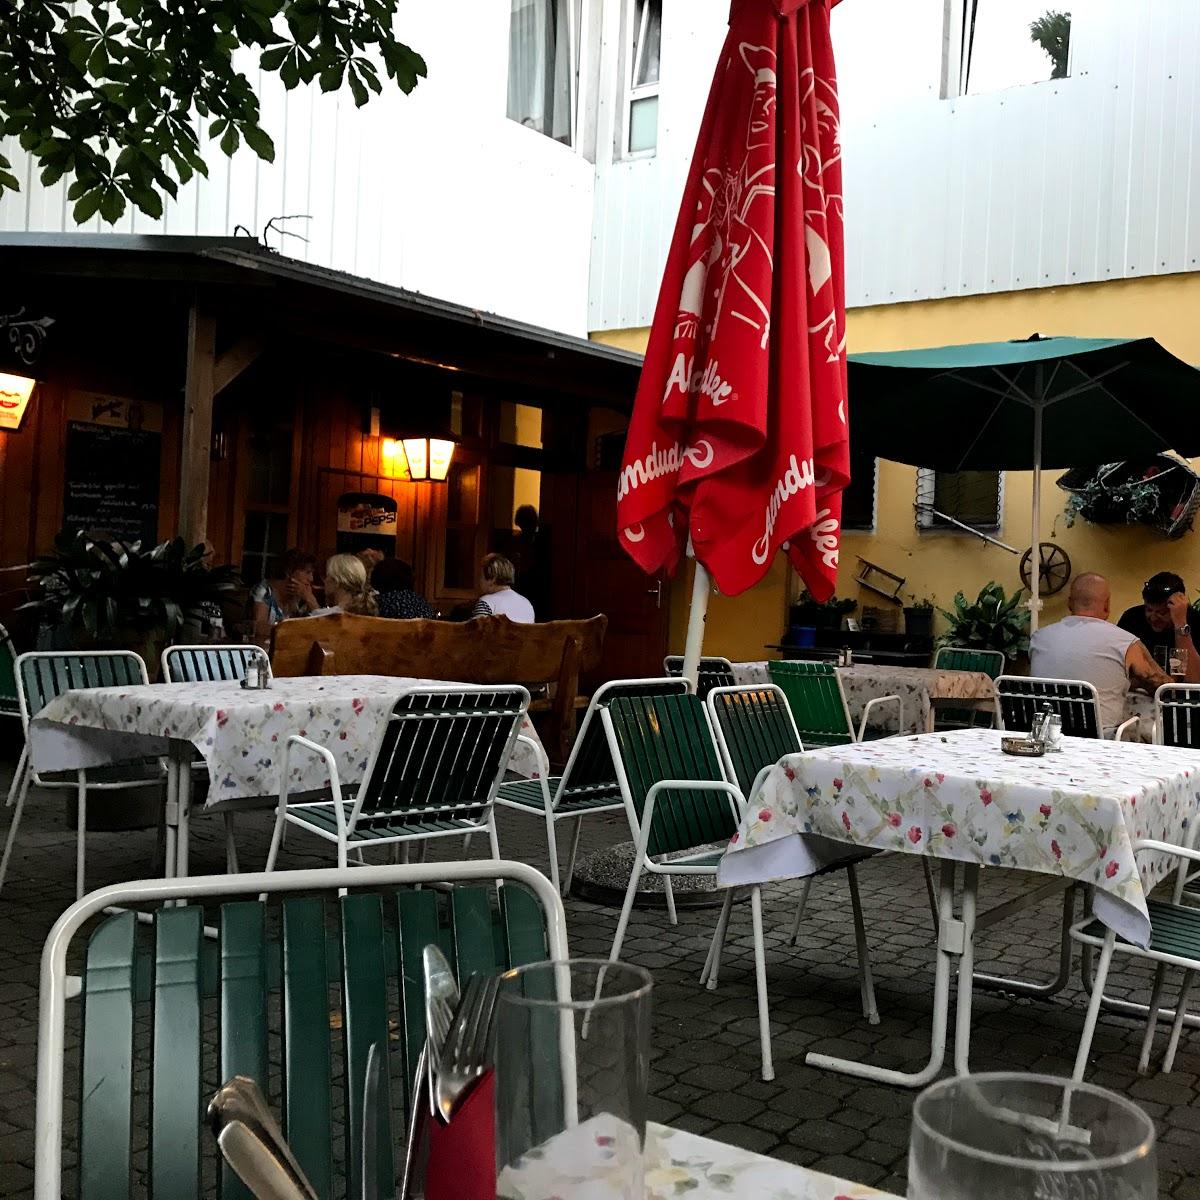 Restaurant "Gasthof Smrcka" in Kottingbrunn